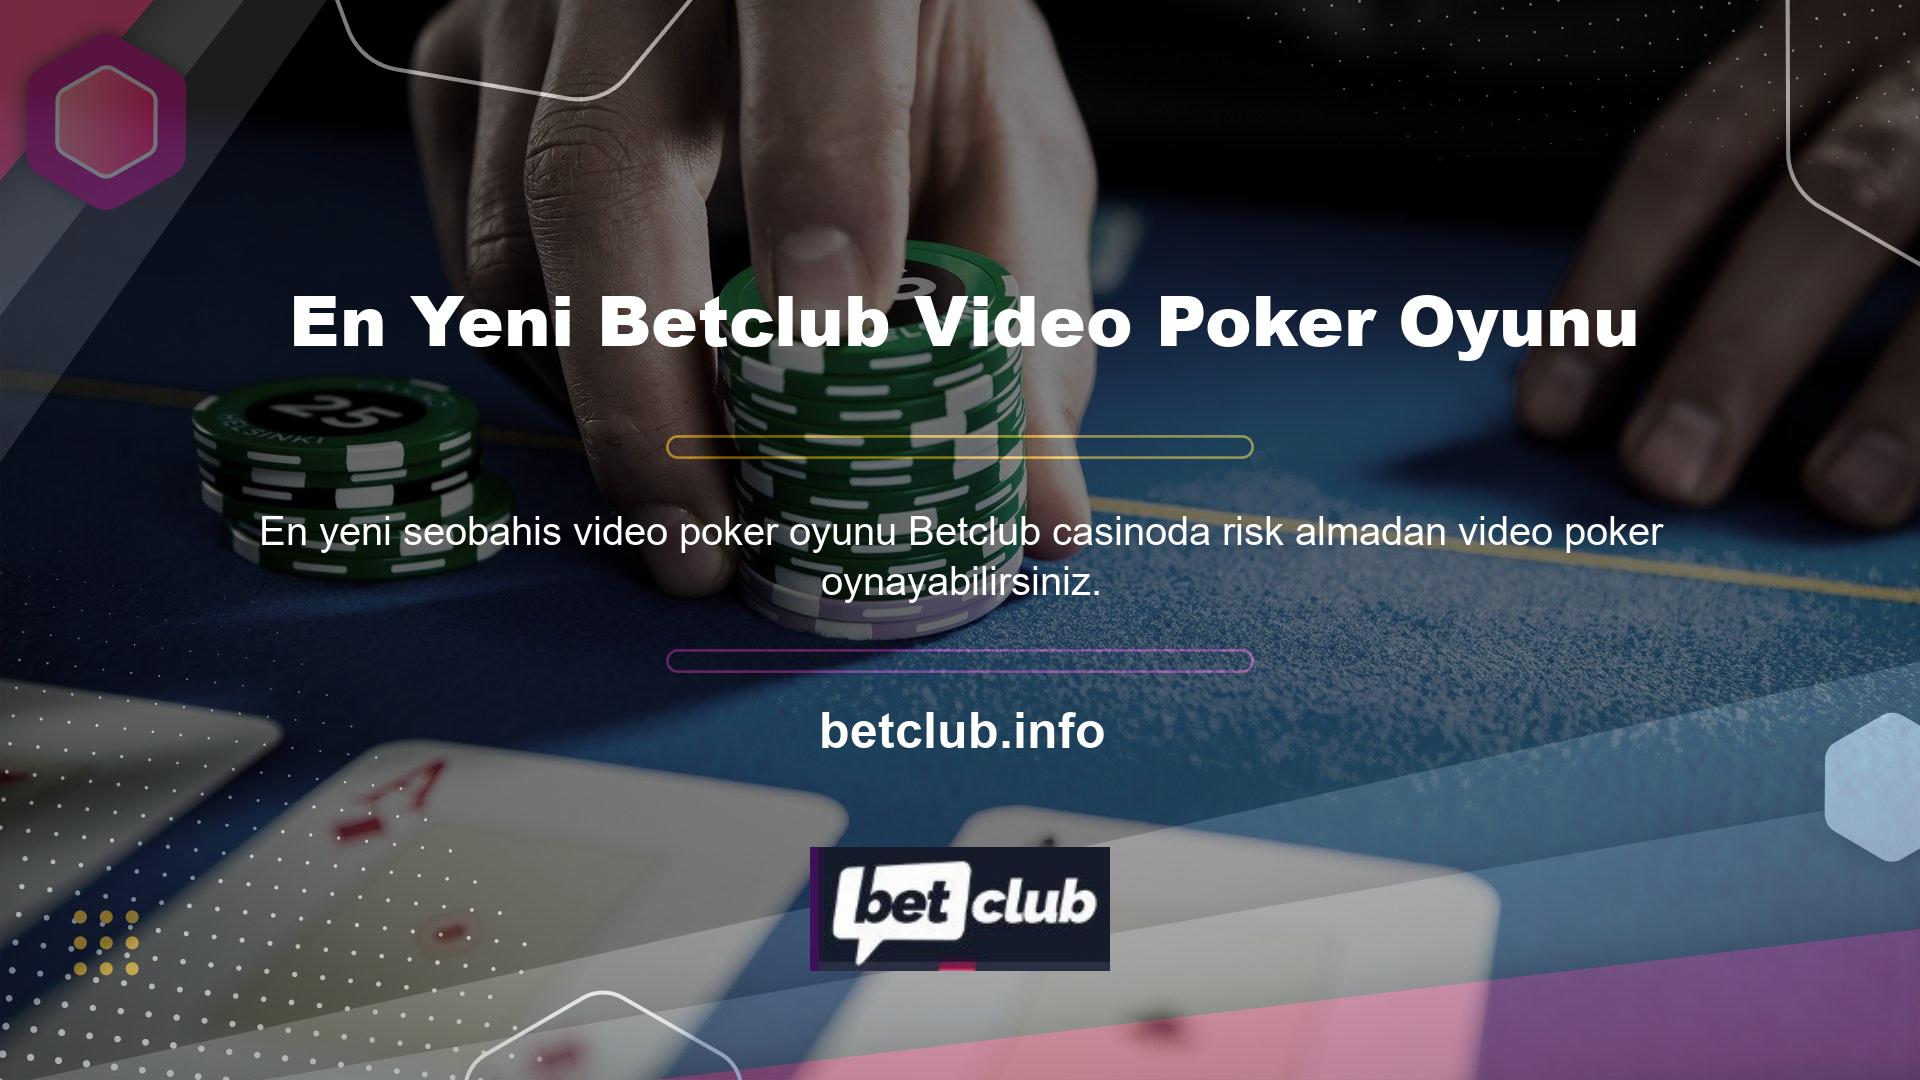 Betclub video pokerin doğuşuna, güvenliğine ve potansiyel kazanç fırsatlarına biraz ışık tutabilir misiniz? Web sitemize Betclub giriş adresinizi girerek bize kaydolun